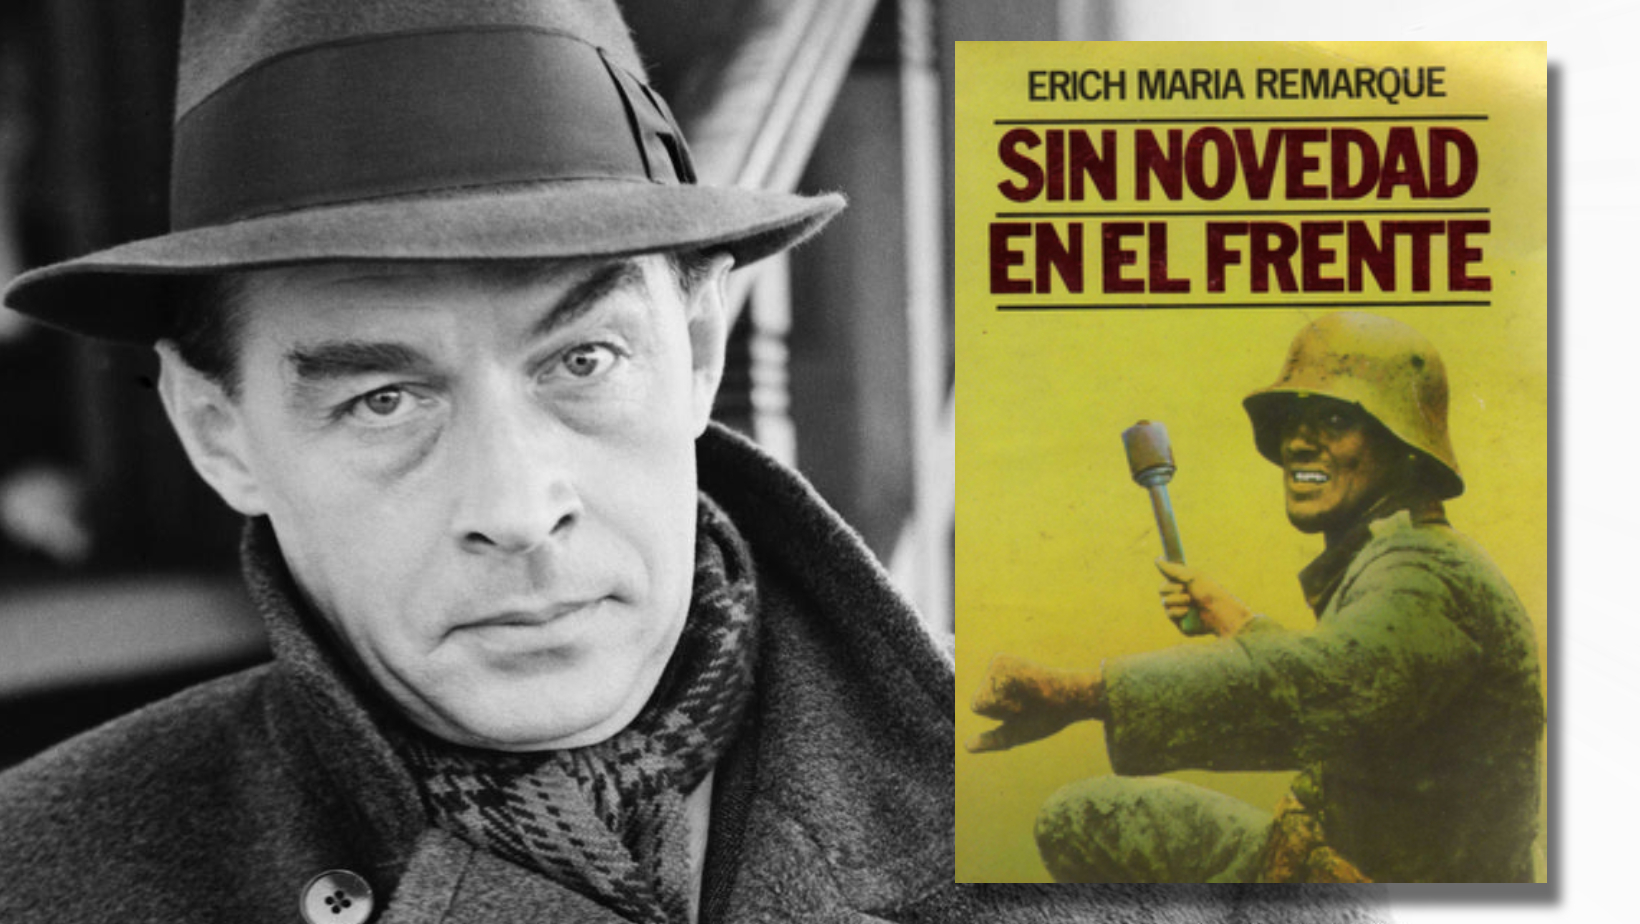 Erich Maria Remarque, quiem como su personaje, fue a la guerra siendo muy joven,  publicó la novela en 1929 y que fue traducida a 26 idiomas solo en el primer año de su publicación.